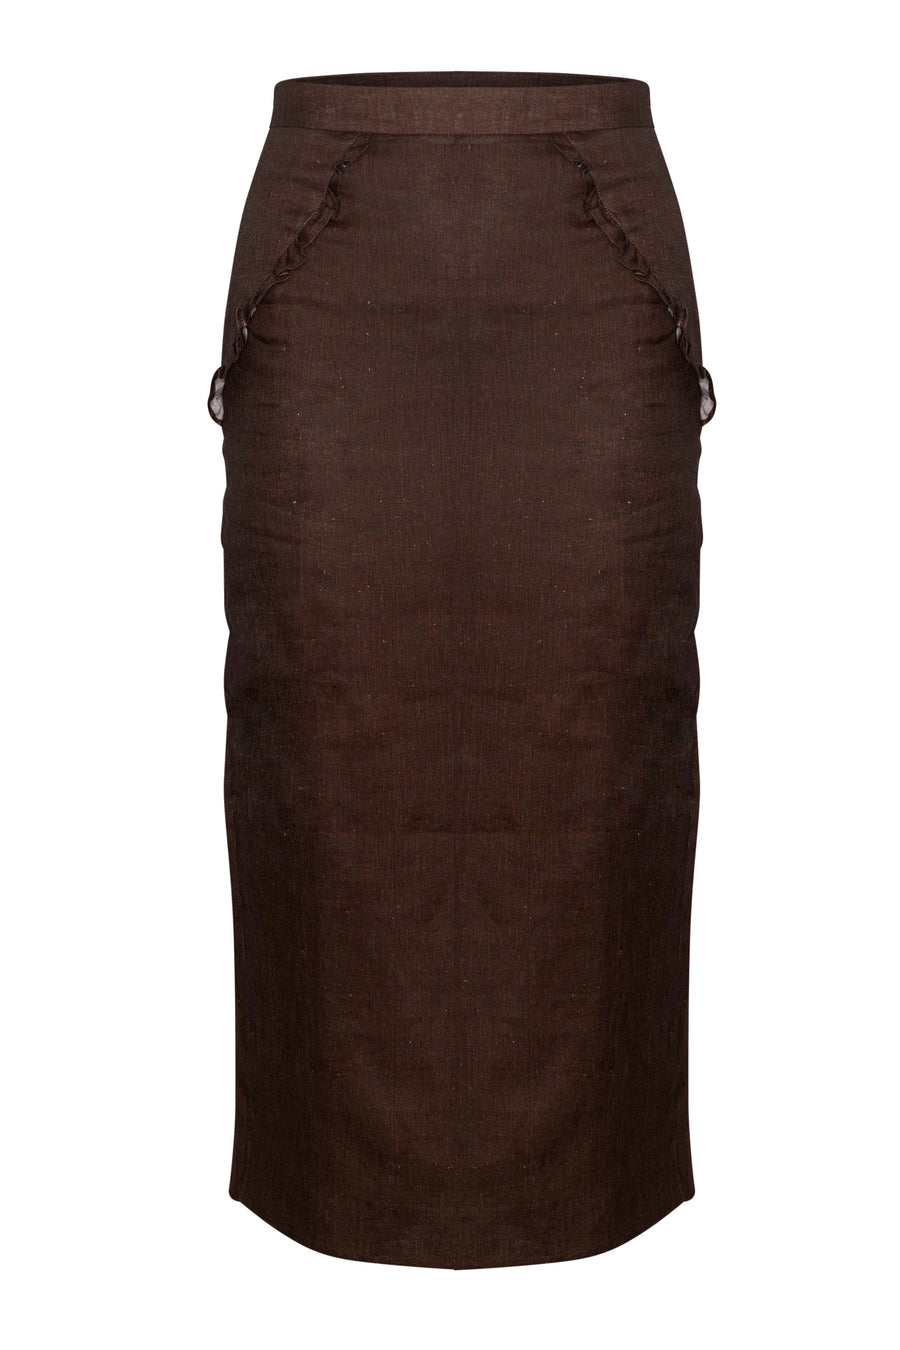 Mila Skirt  Dusty Brown Linen